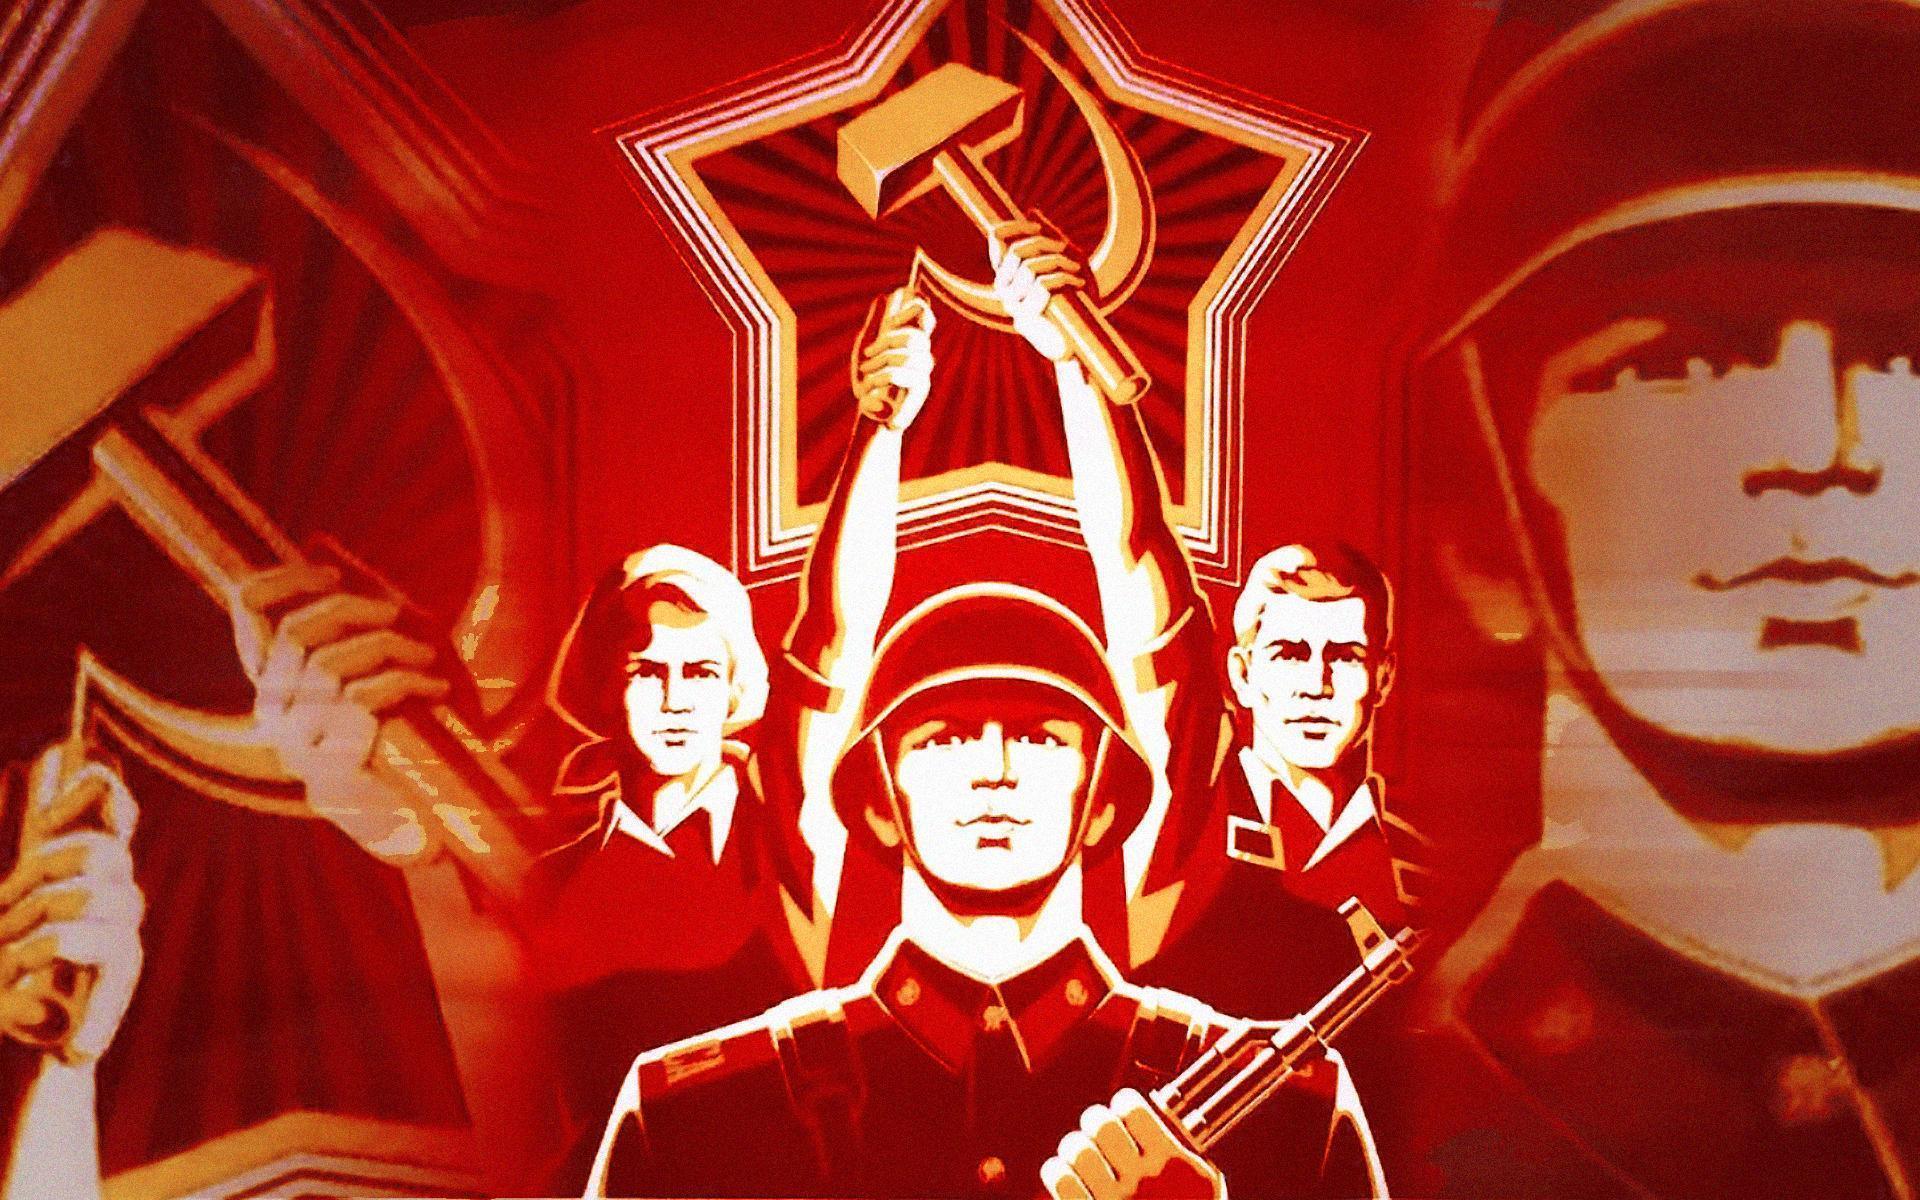 Soviet wallpaper in full HD it&;s Russia